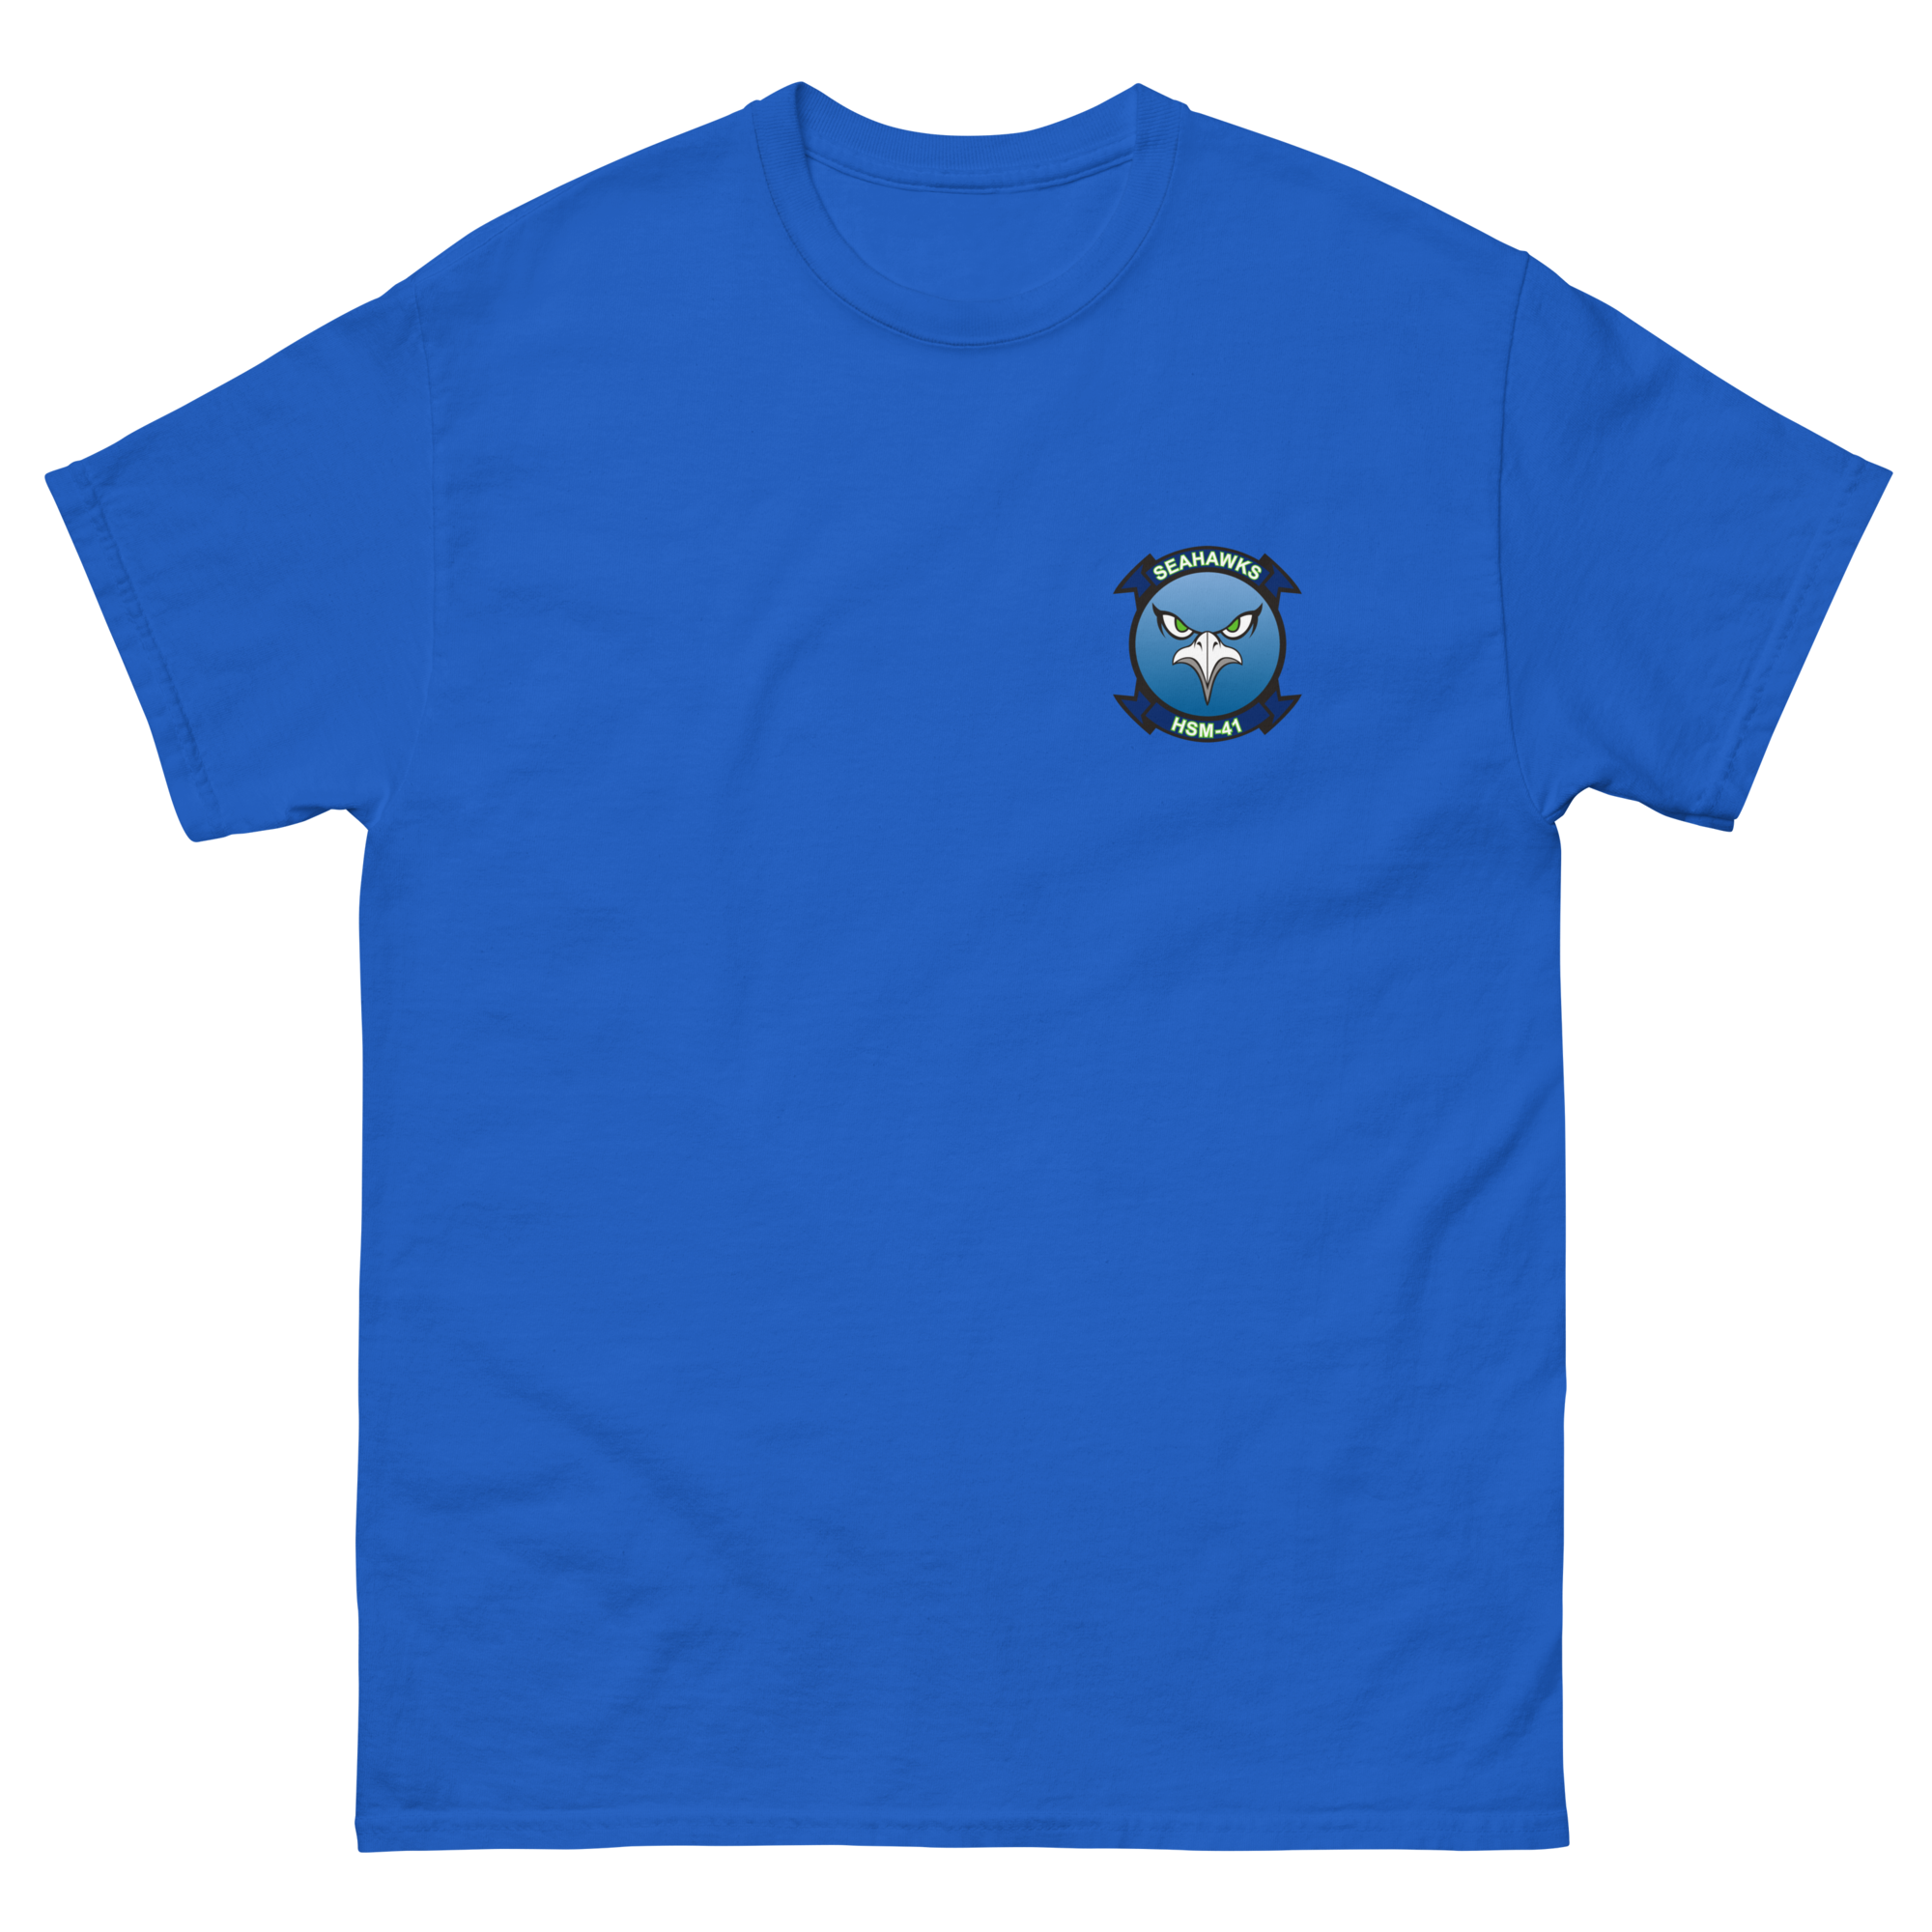 HSM-41 Seahawks Squadron Crest T-Shirt